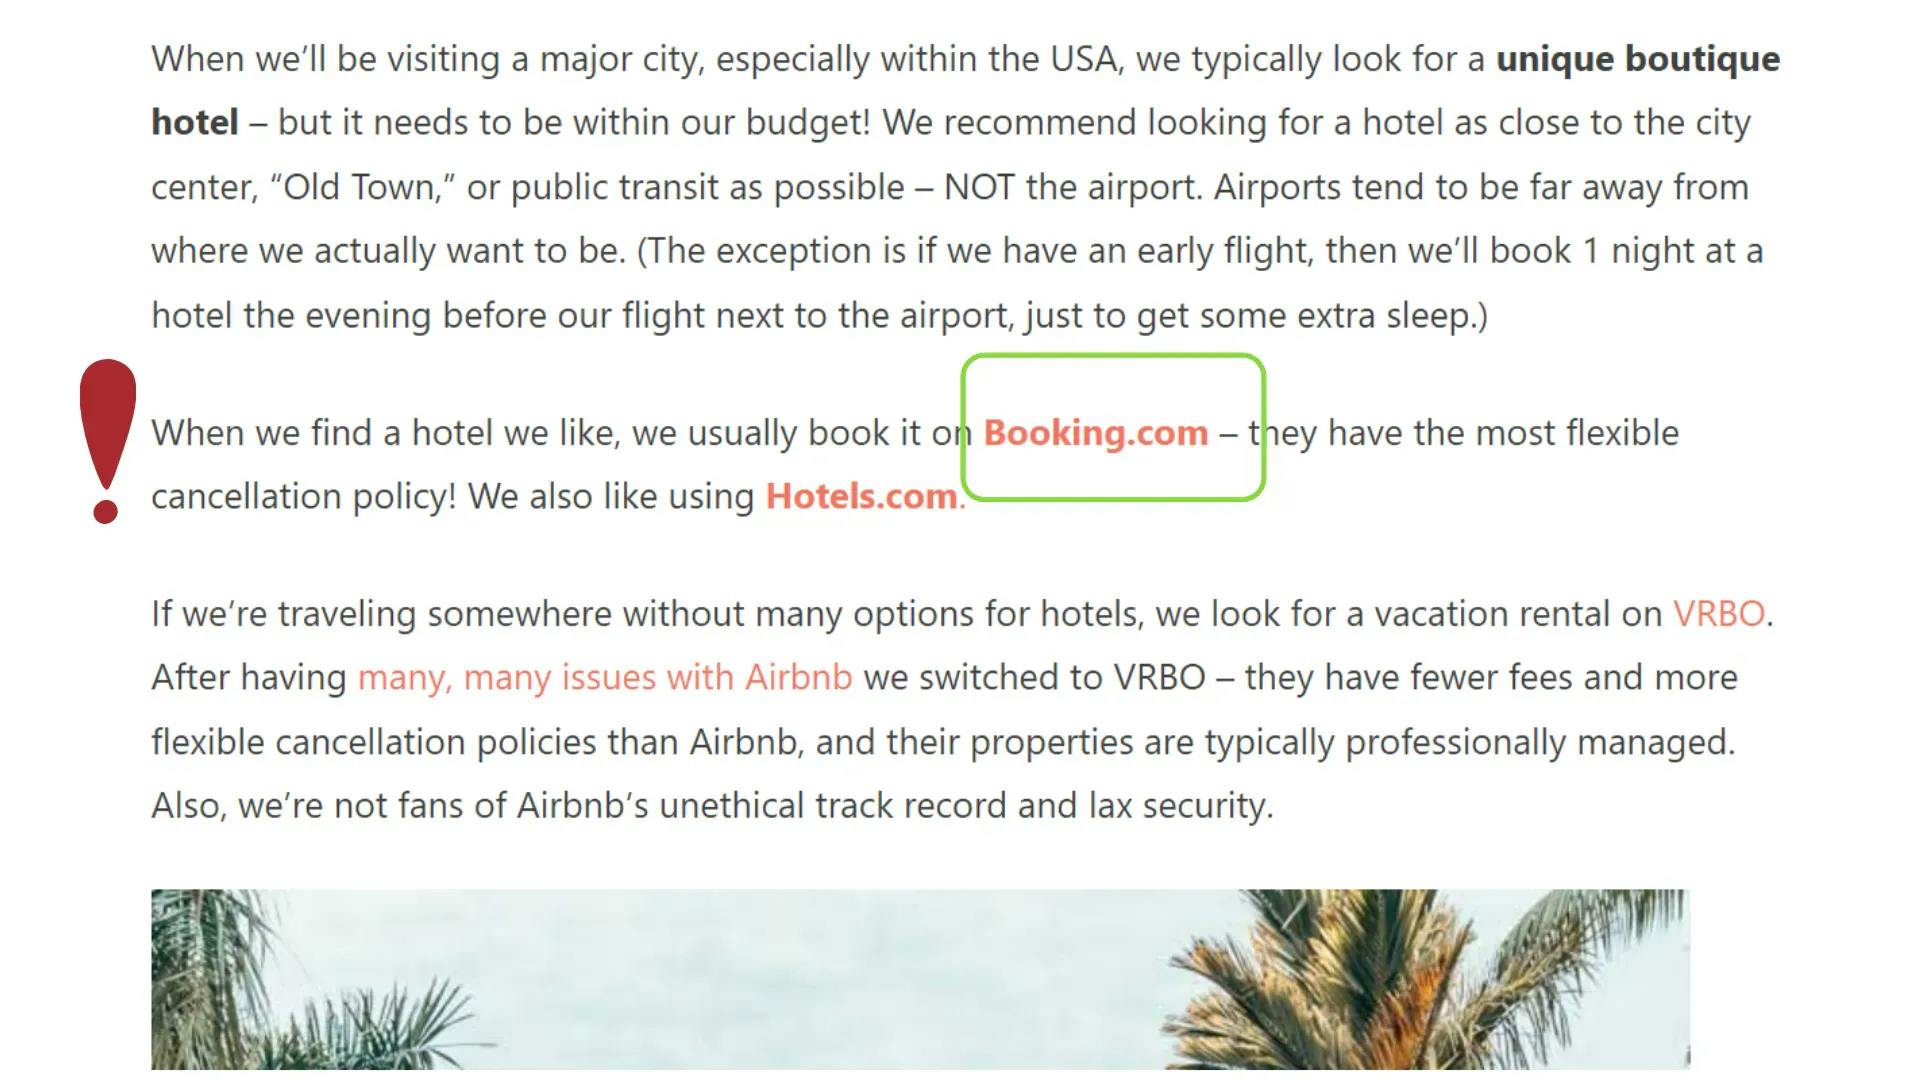 Liste der manipulativen Marketing-Tricks, mit denen Booking.com und andere Hotelbuchungsseiten ihre Kunden täuschen [mit Beispielen] - affiliate links